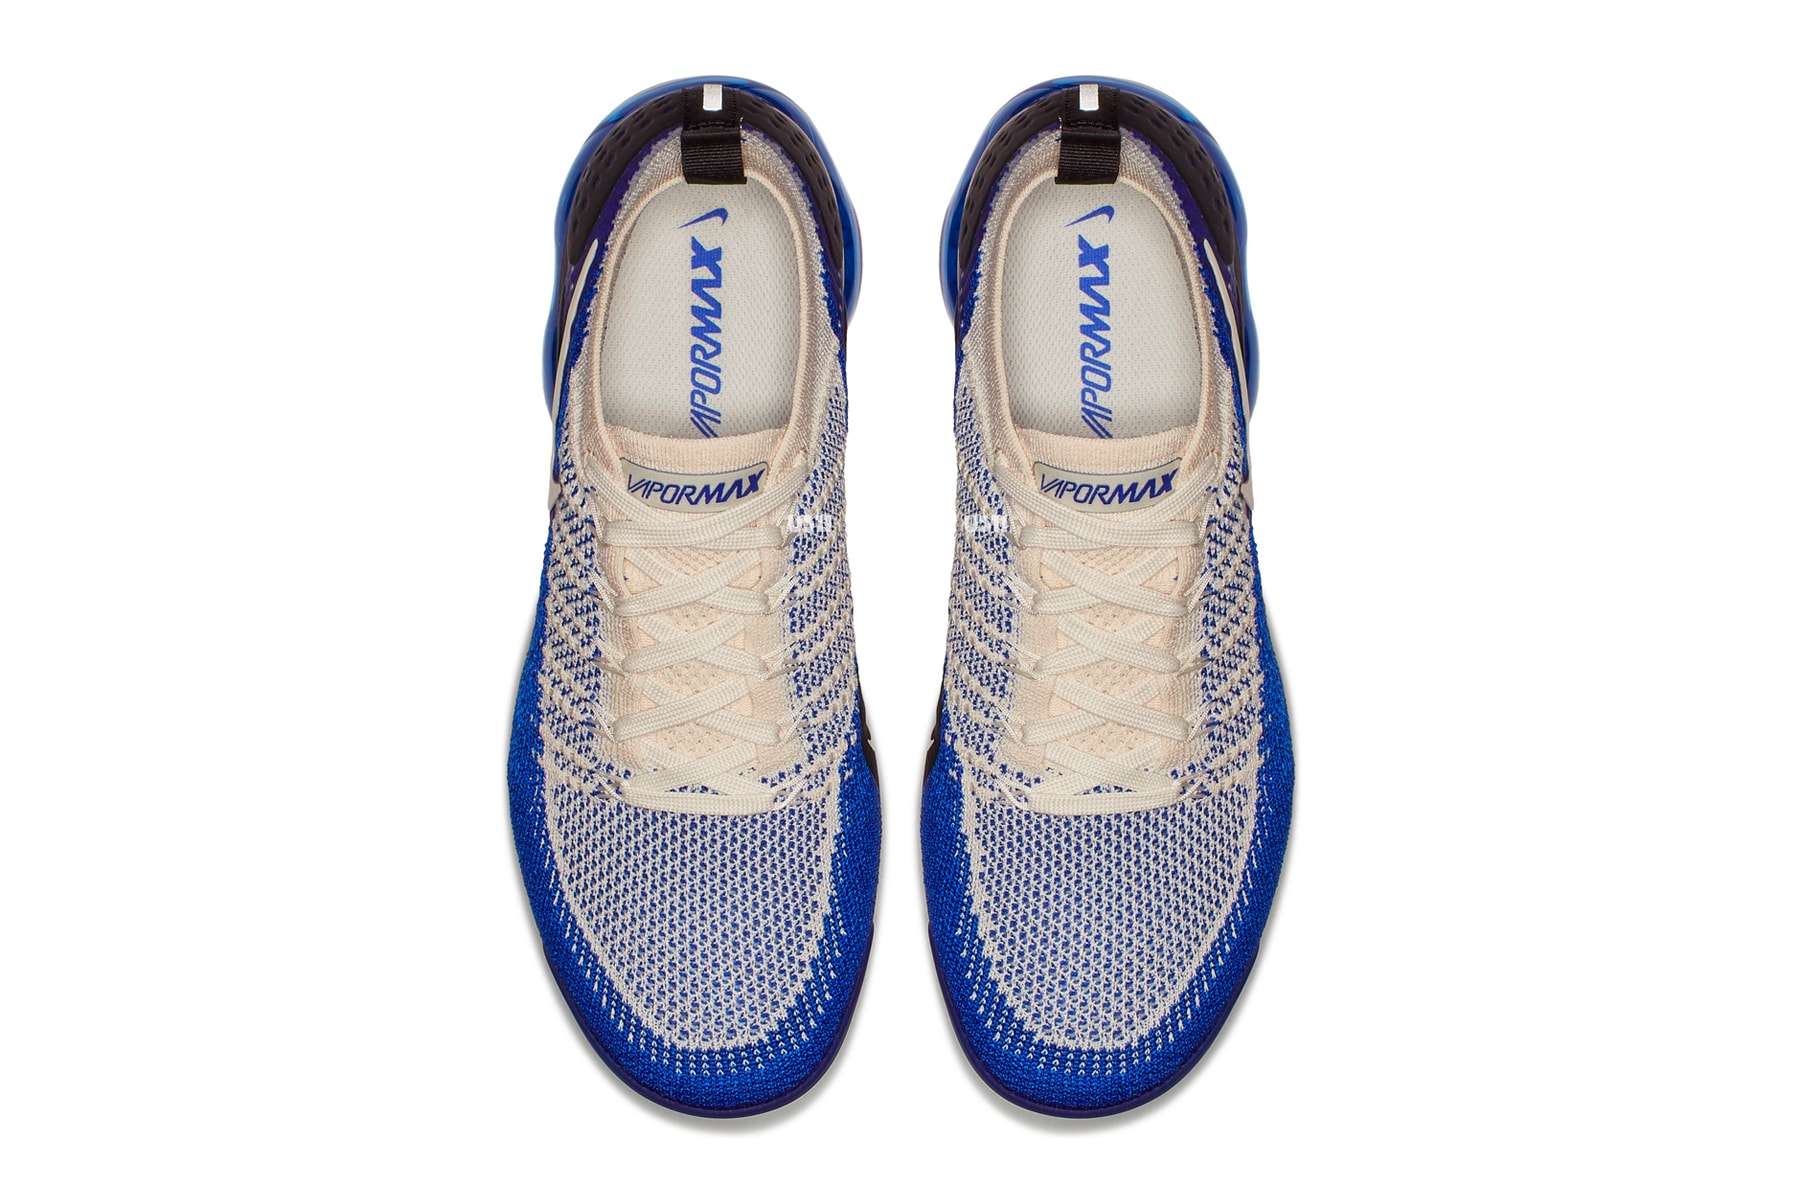 Nike Air VaporMax 2 Light Cream Racer Blue running flyknit summer 2018 sneakers